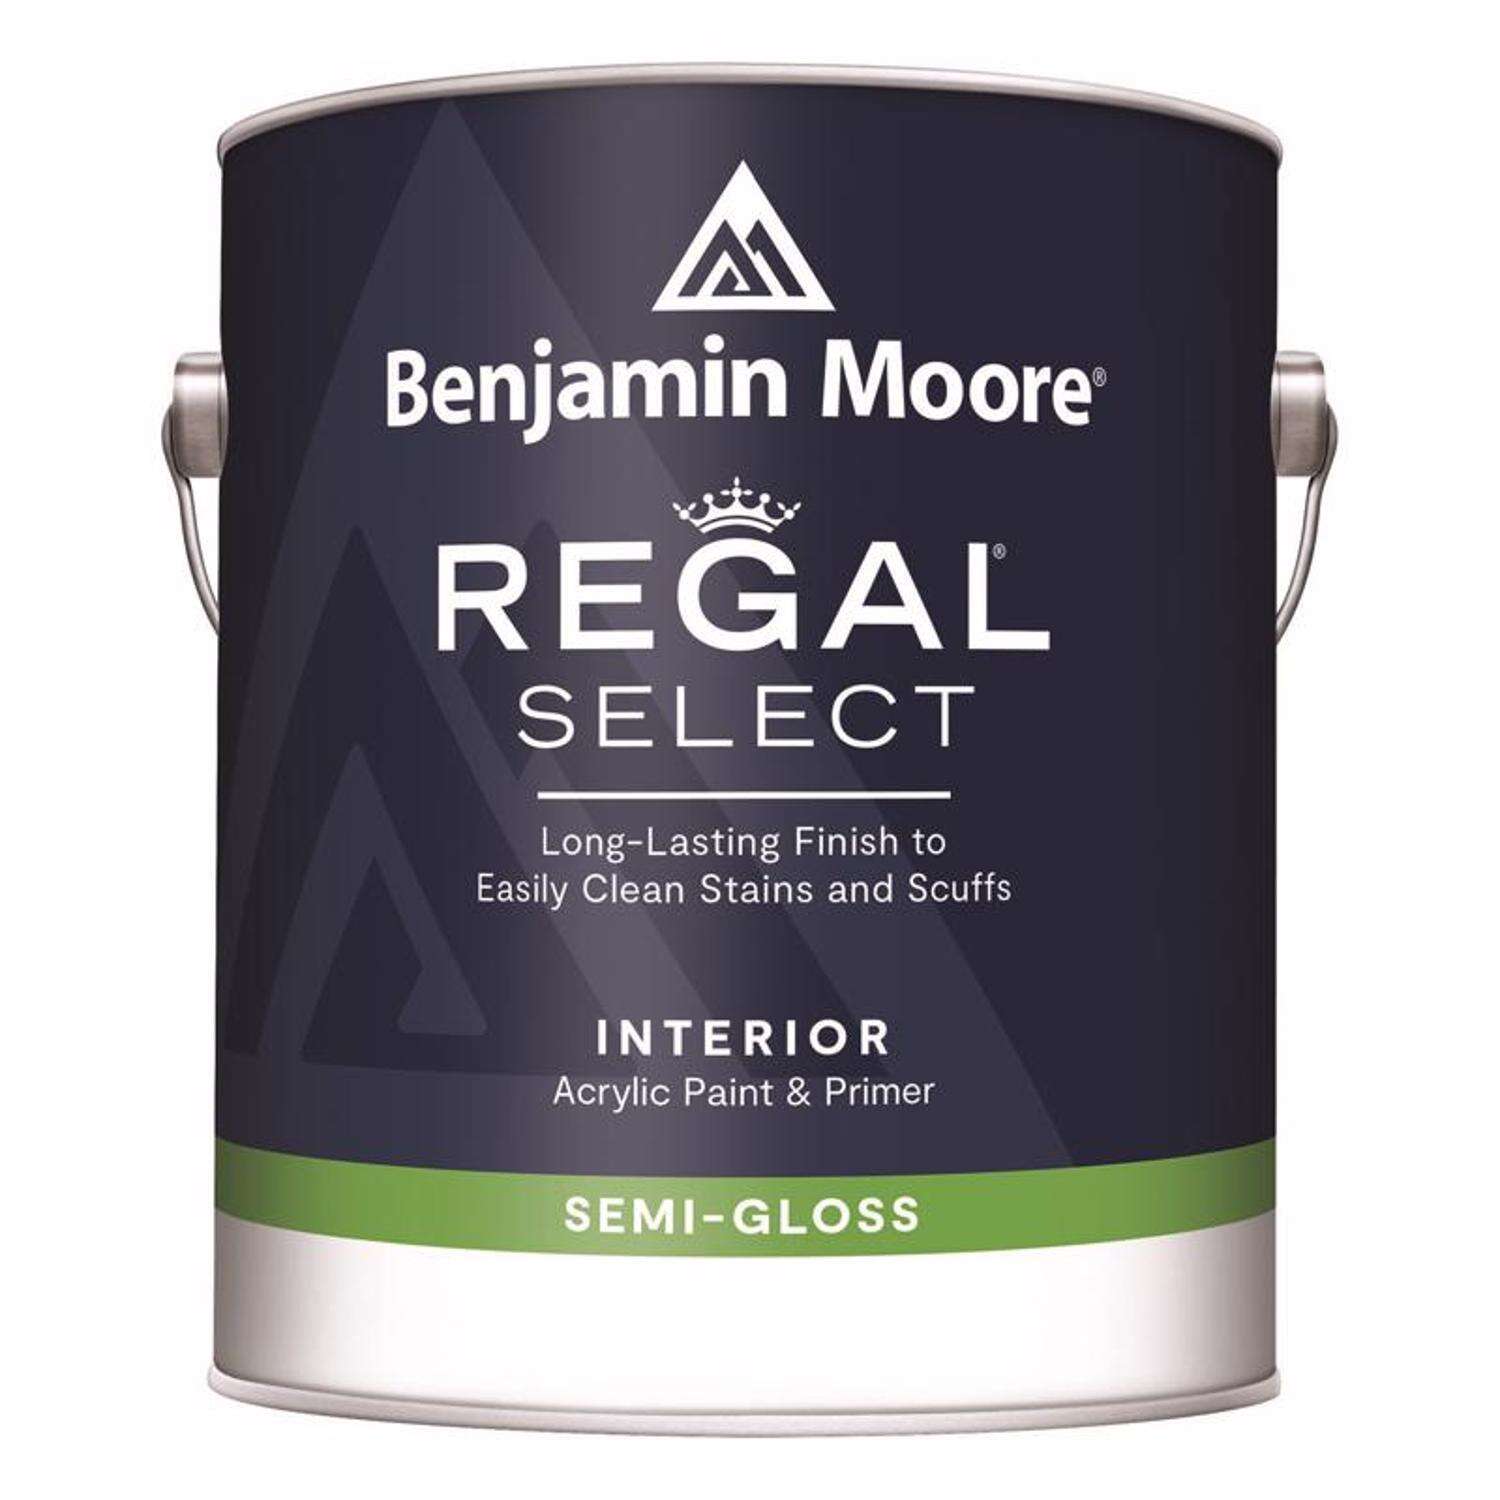 GAL REGAL SELECT Acrylic Interior Paint & Primer - Semi-Gloss Finish